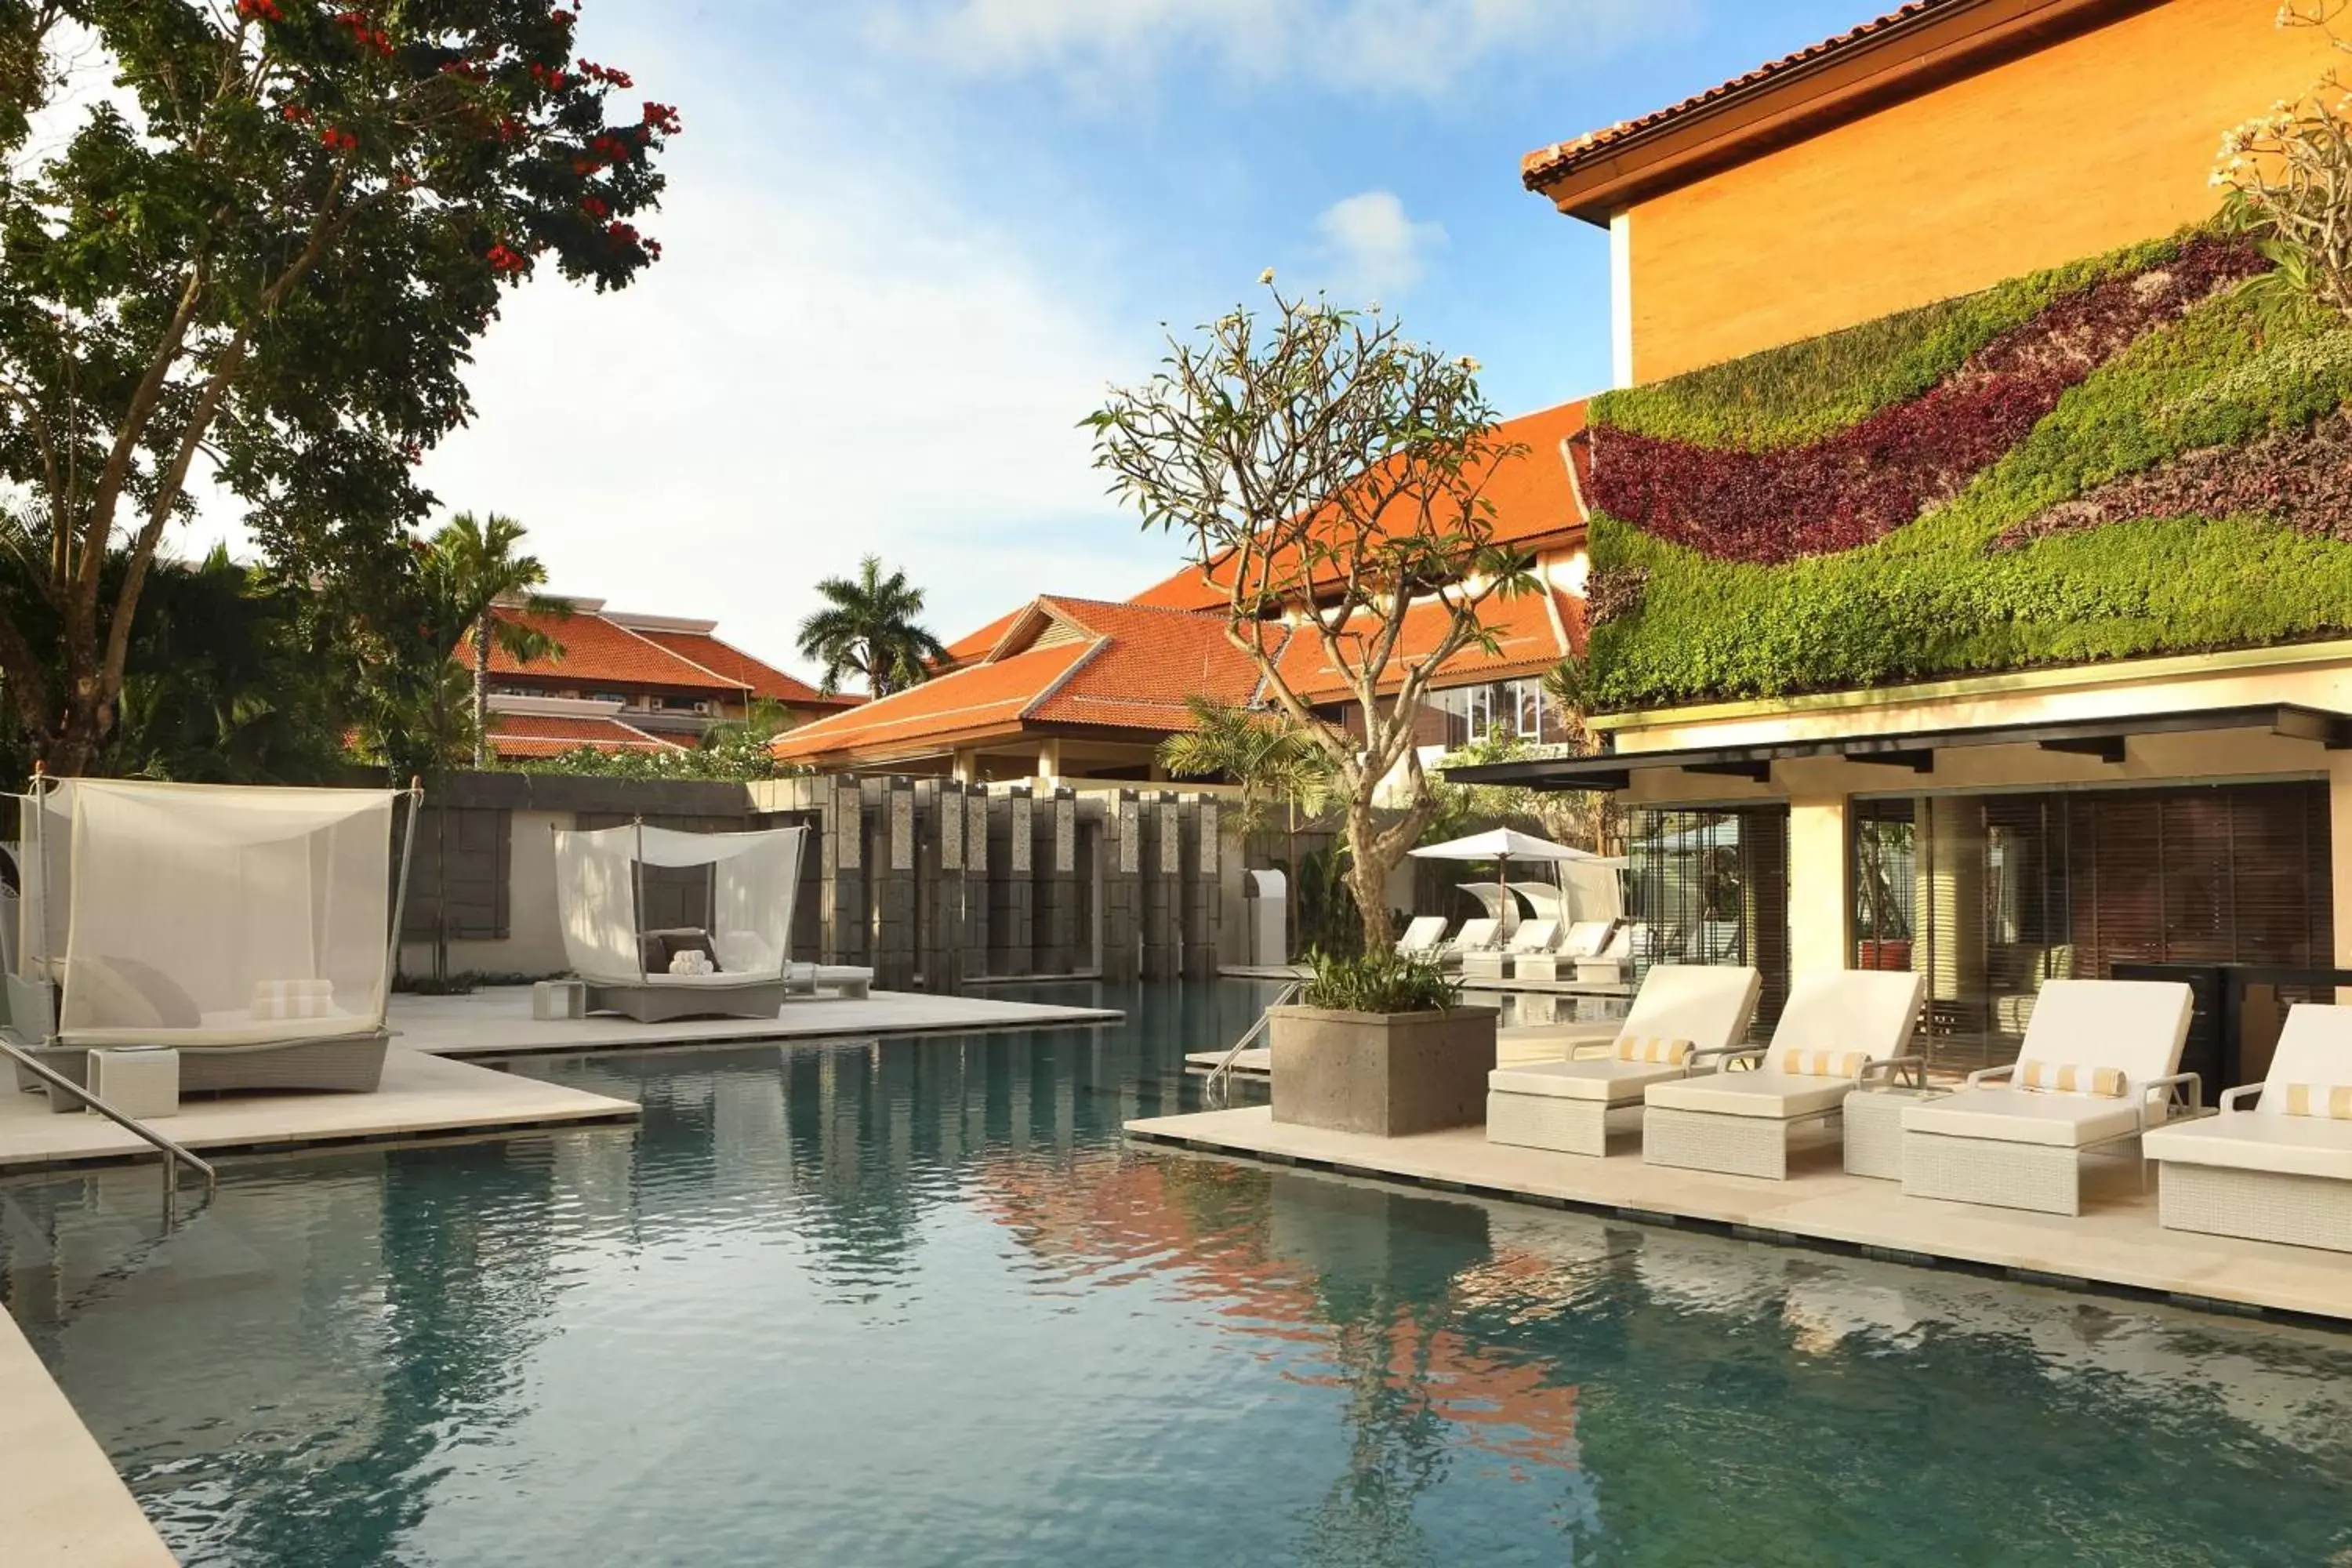 Swimming Pool in The Westin Resort Nusa Dua, Bali